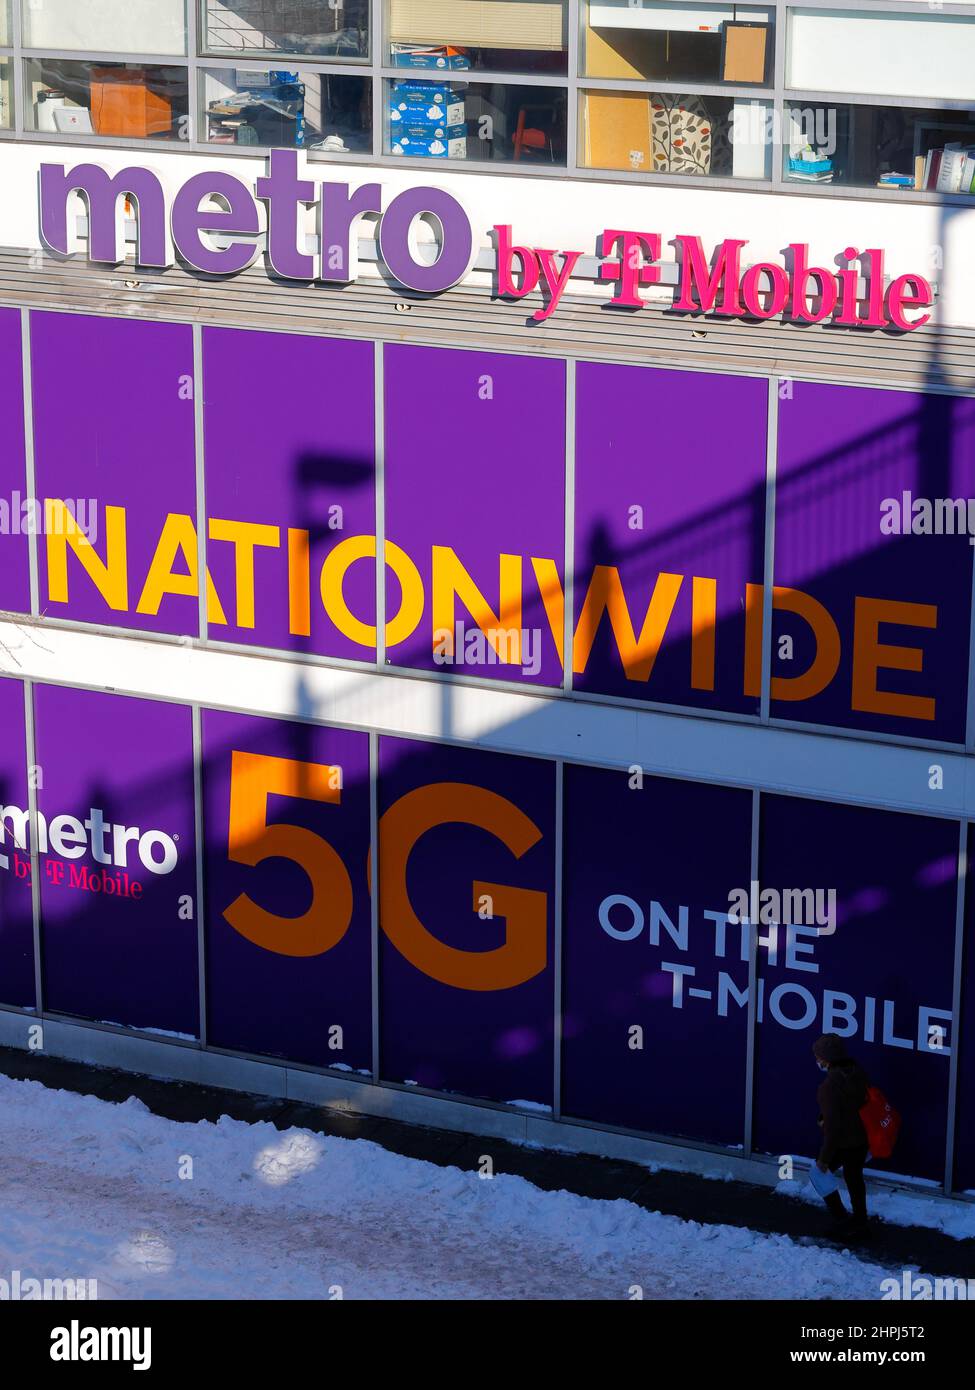 Une personne passe devant un magasin de téléphonie mobile Metro by T-Mobile avec une grande signalisation annonçant Nationwide 5G, New York, NY. Banque D'Images